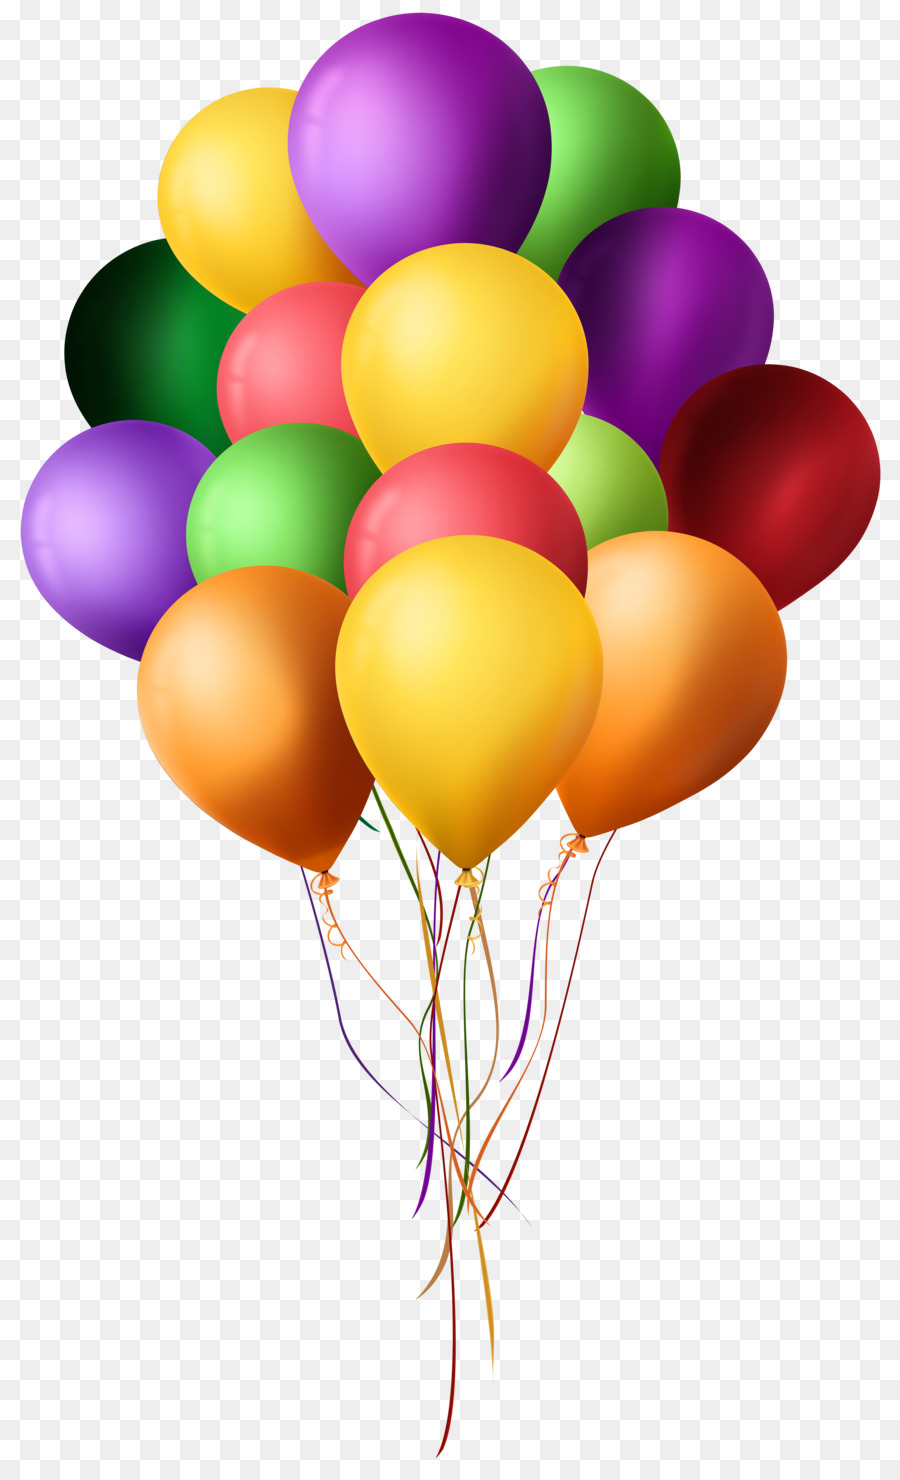 Balloon Stock photography Clip art - balloon png download - 4883*8000 - Free Transparent Balloon png Download.